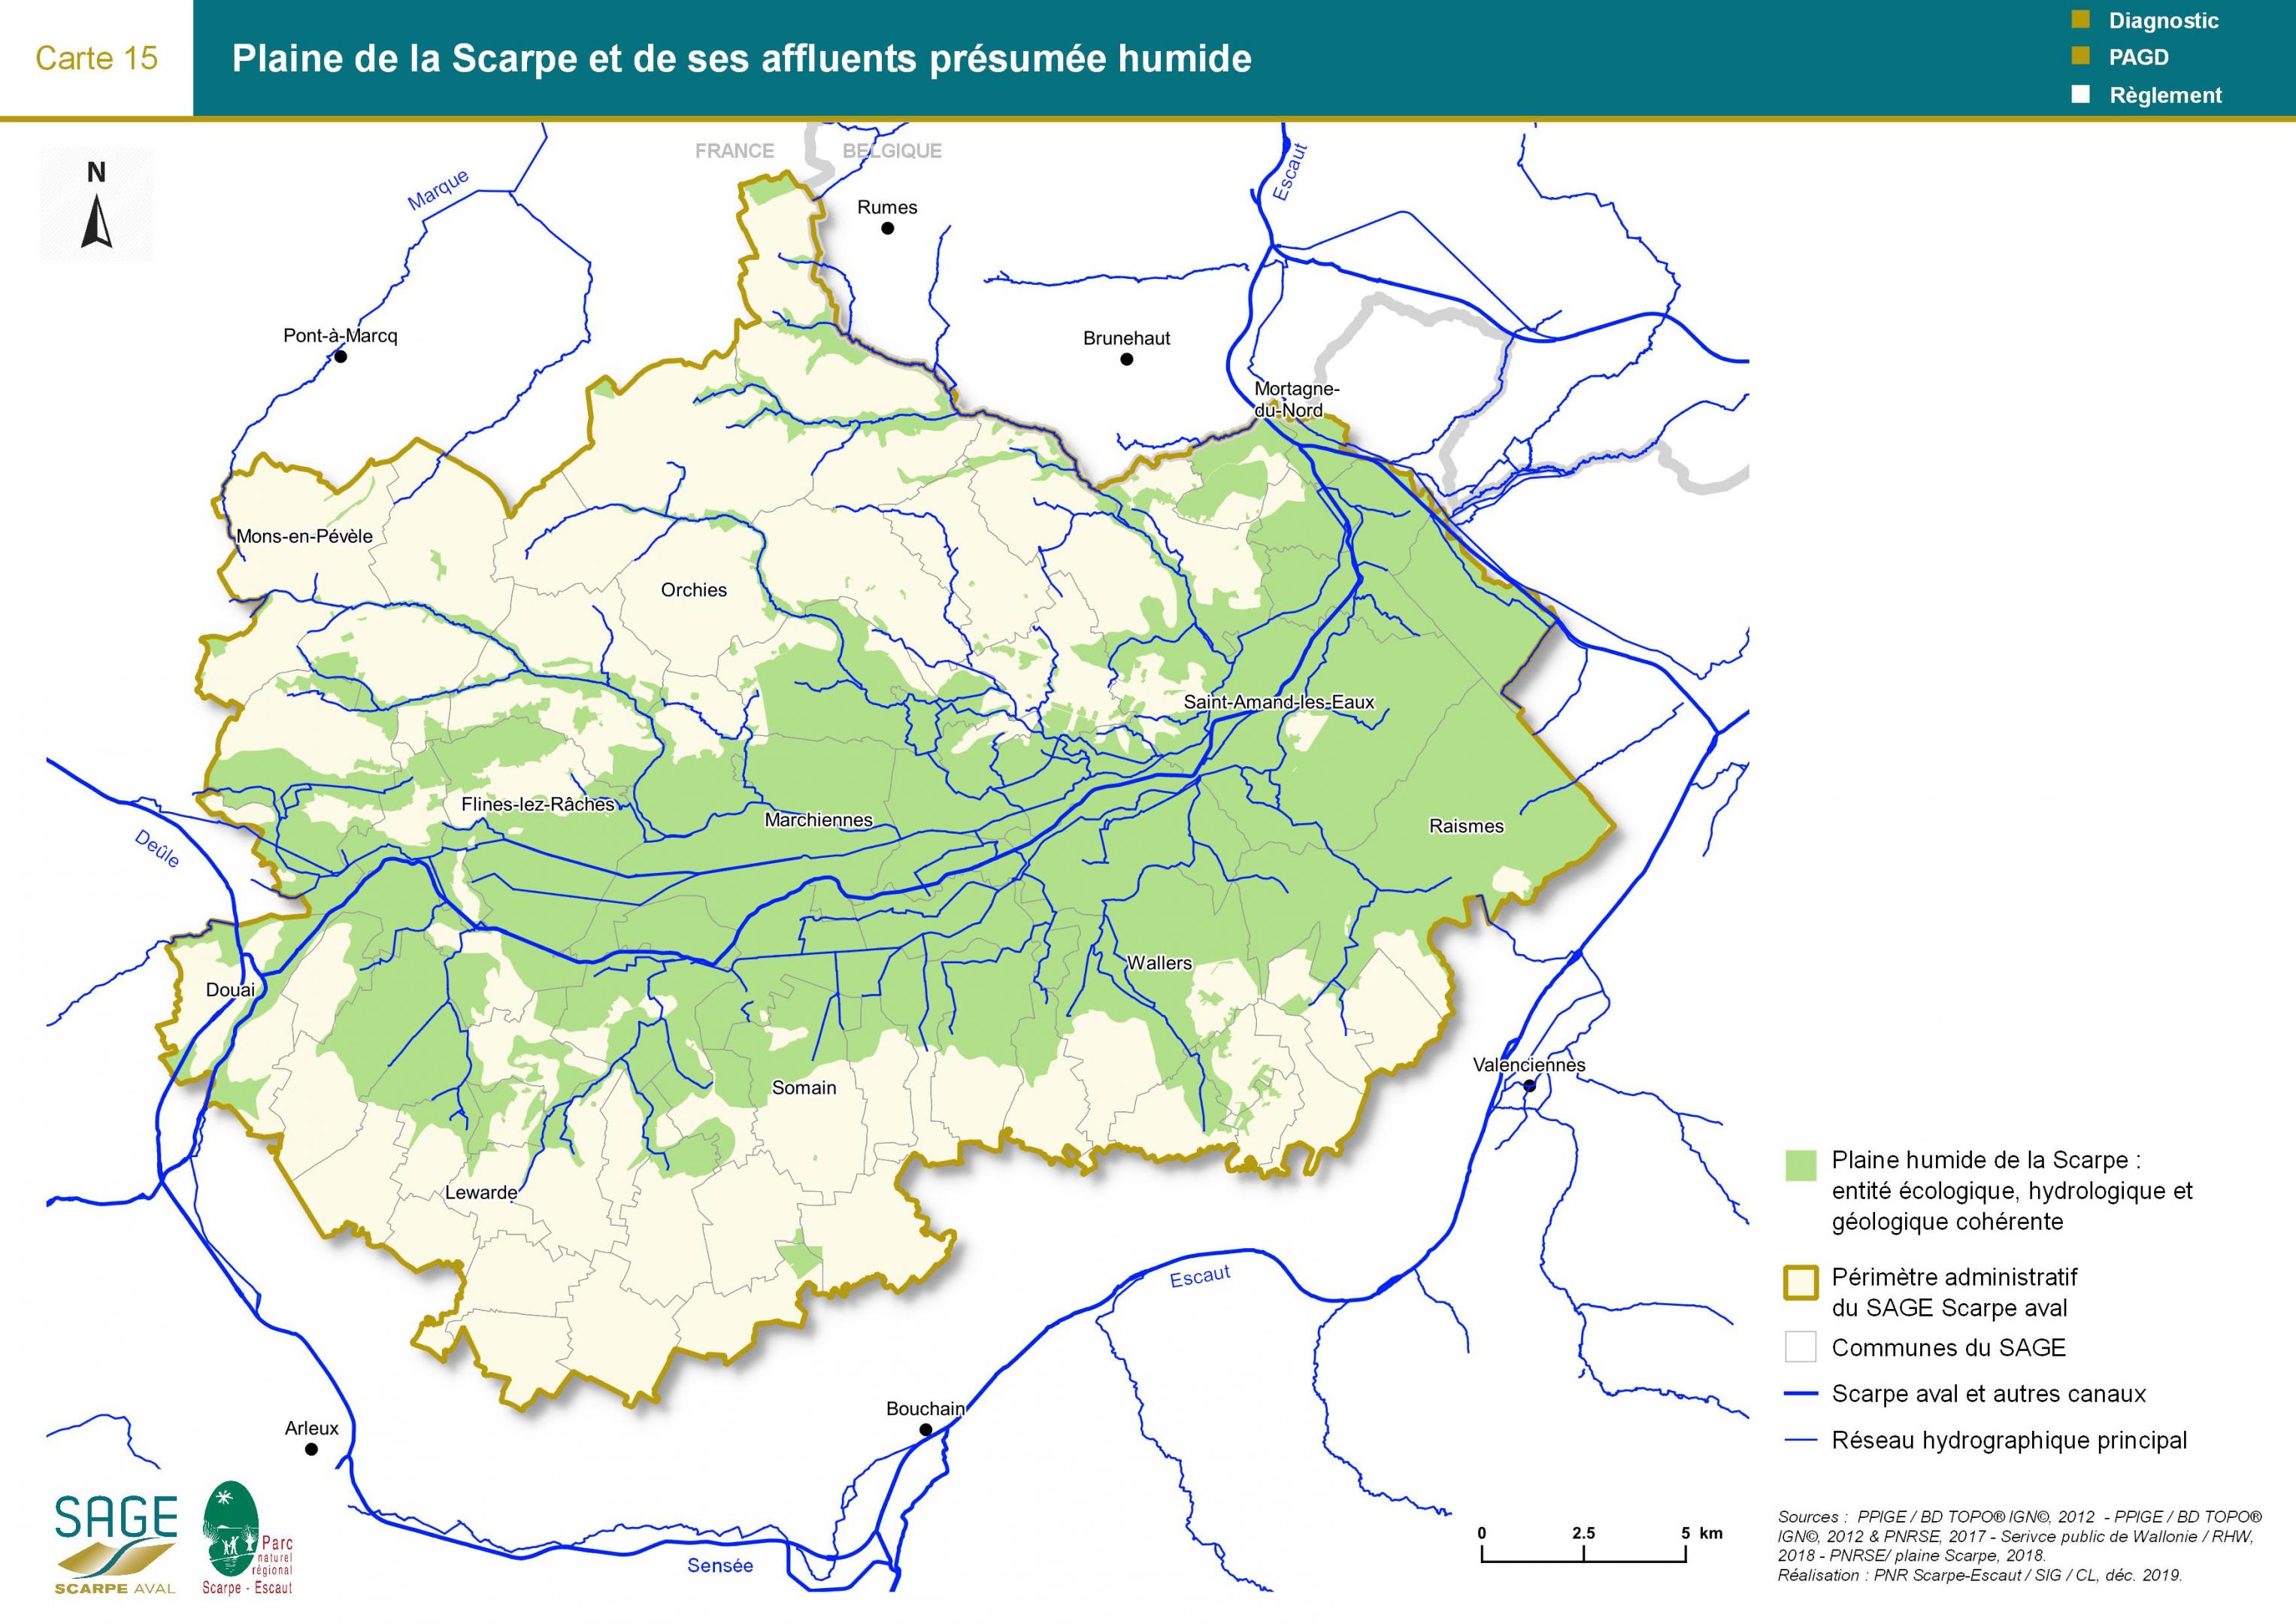 Etat des lieux - Carte 15 : Plaine de la Scarpe aval et de ses affluents présumée humide